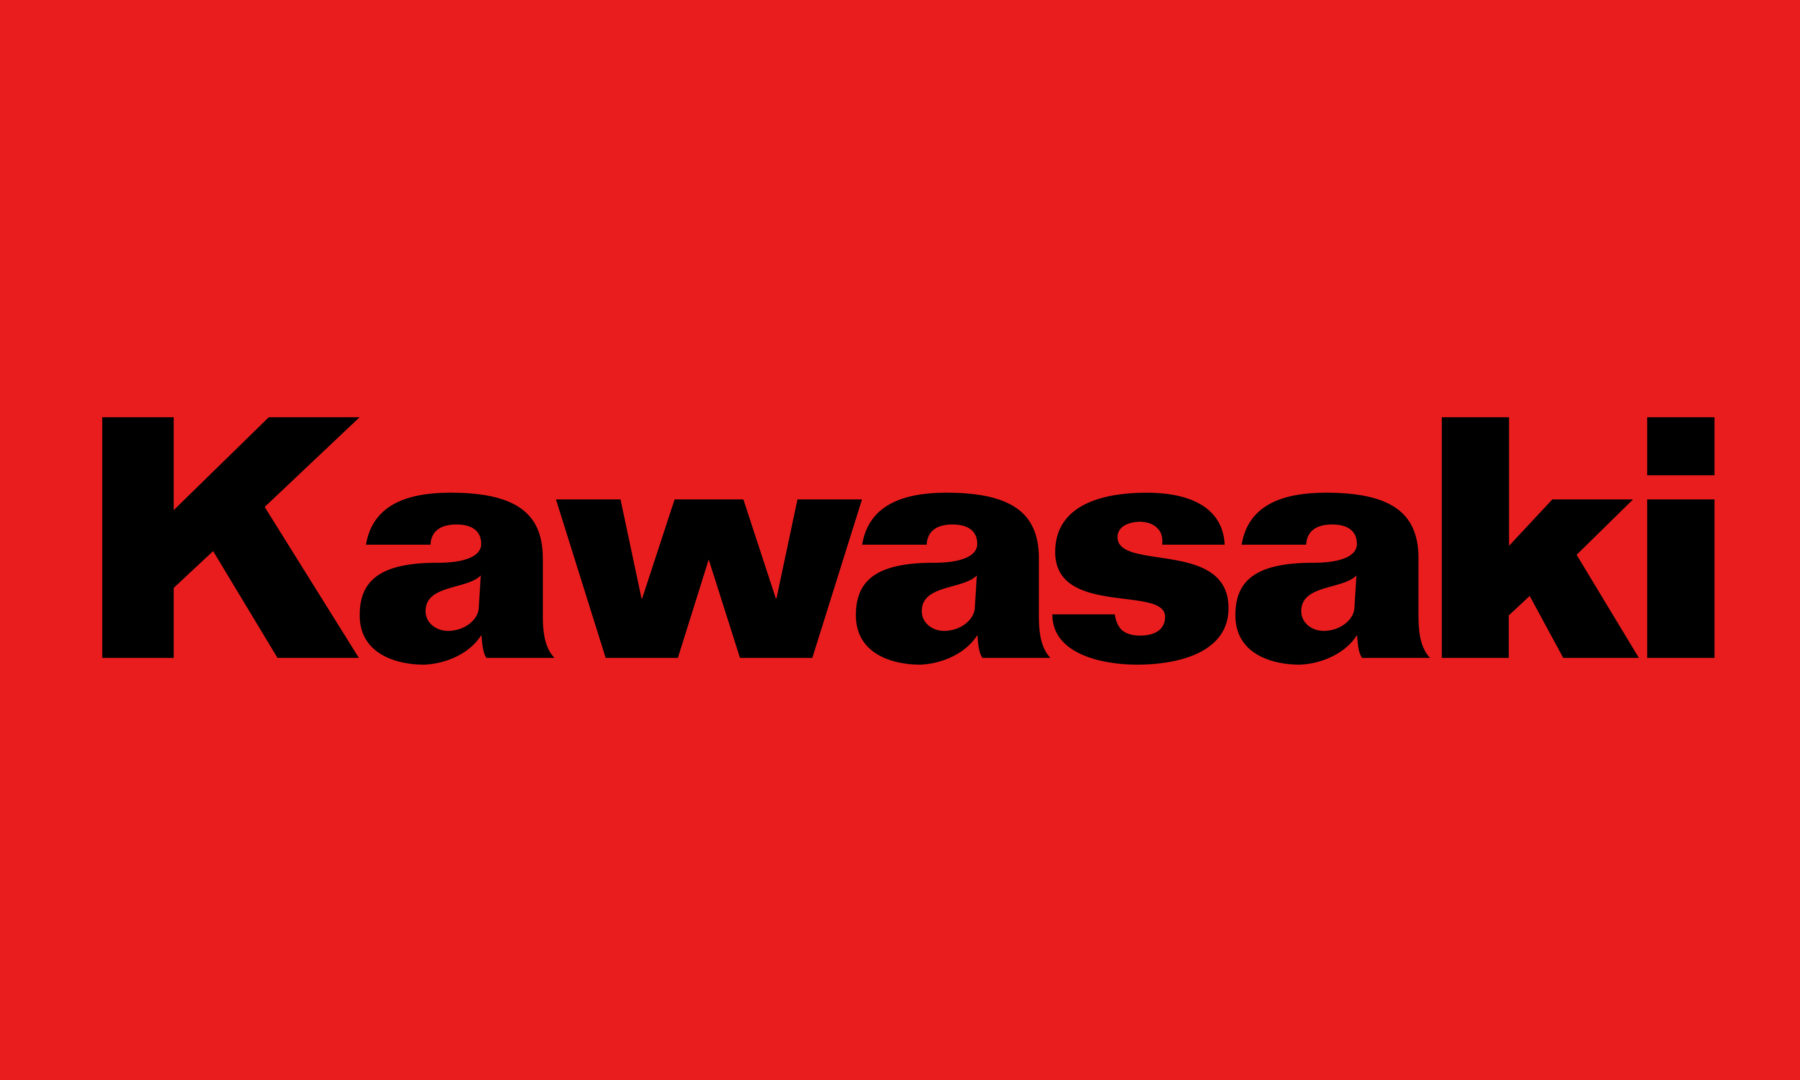 Kawasaki logo description